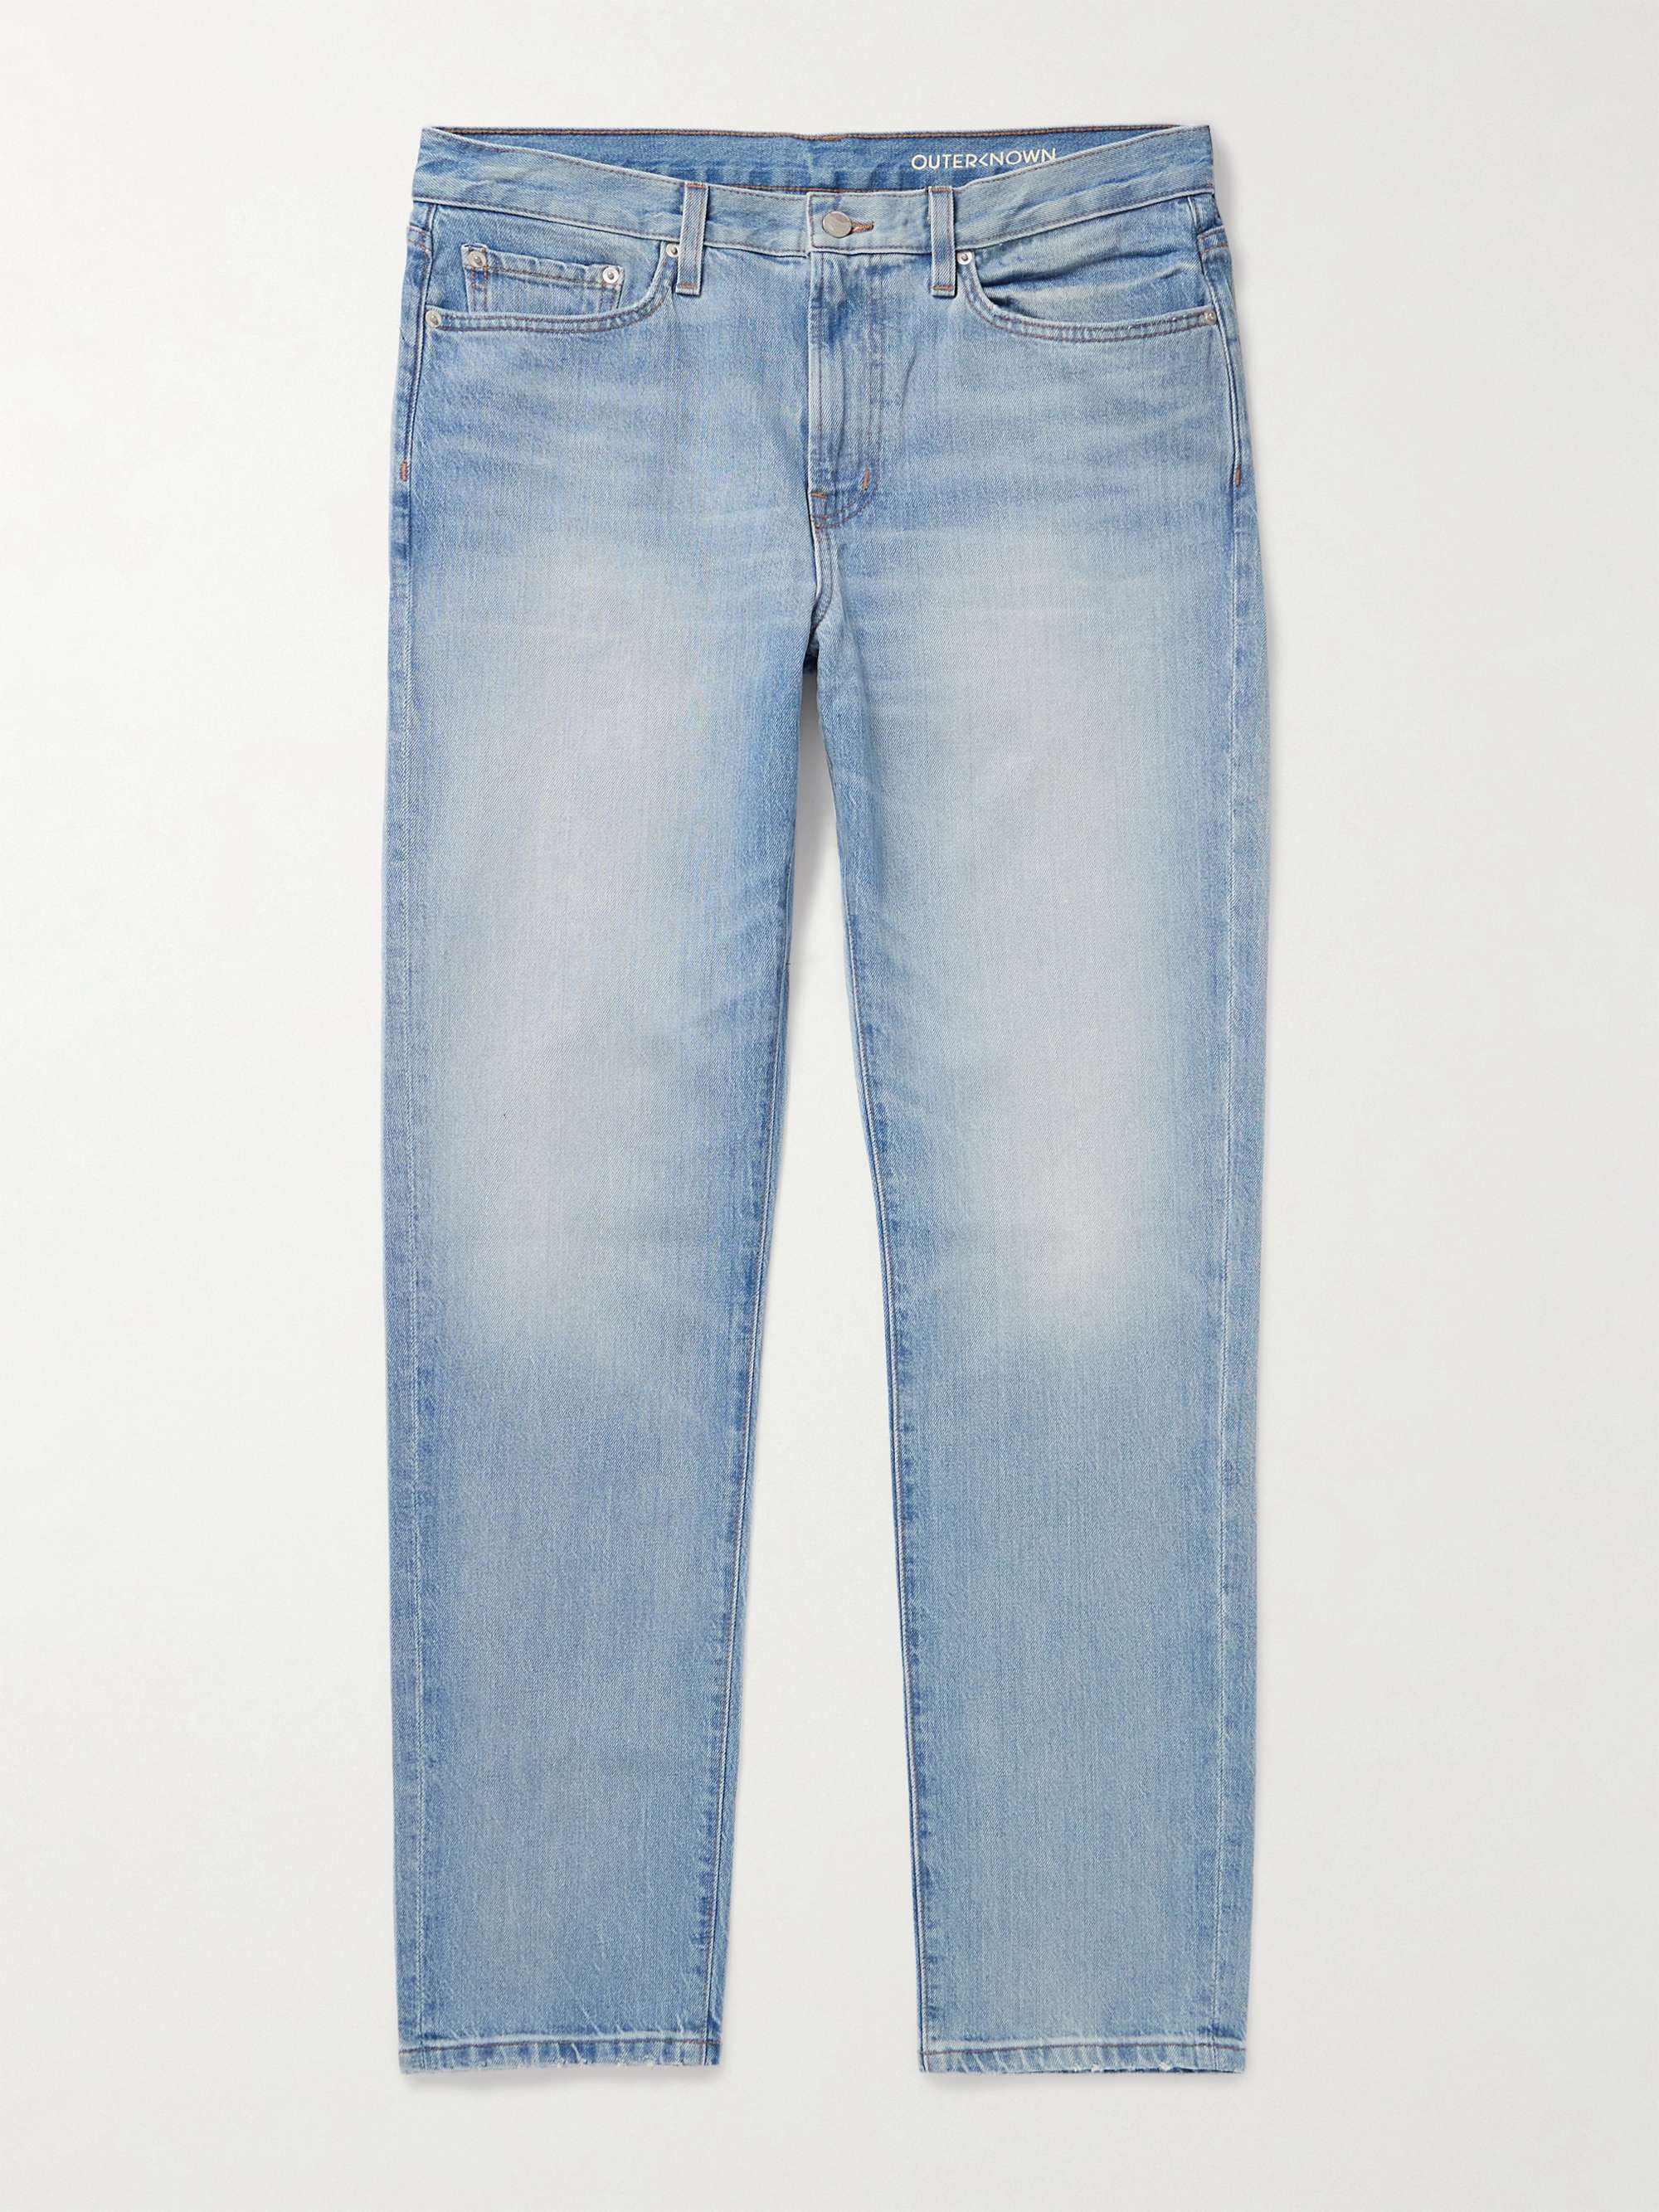 OUTERKNOWN Drifter Straight-Leg Organic Jeans for Men | MR PORTER